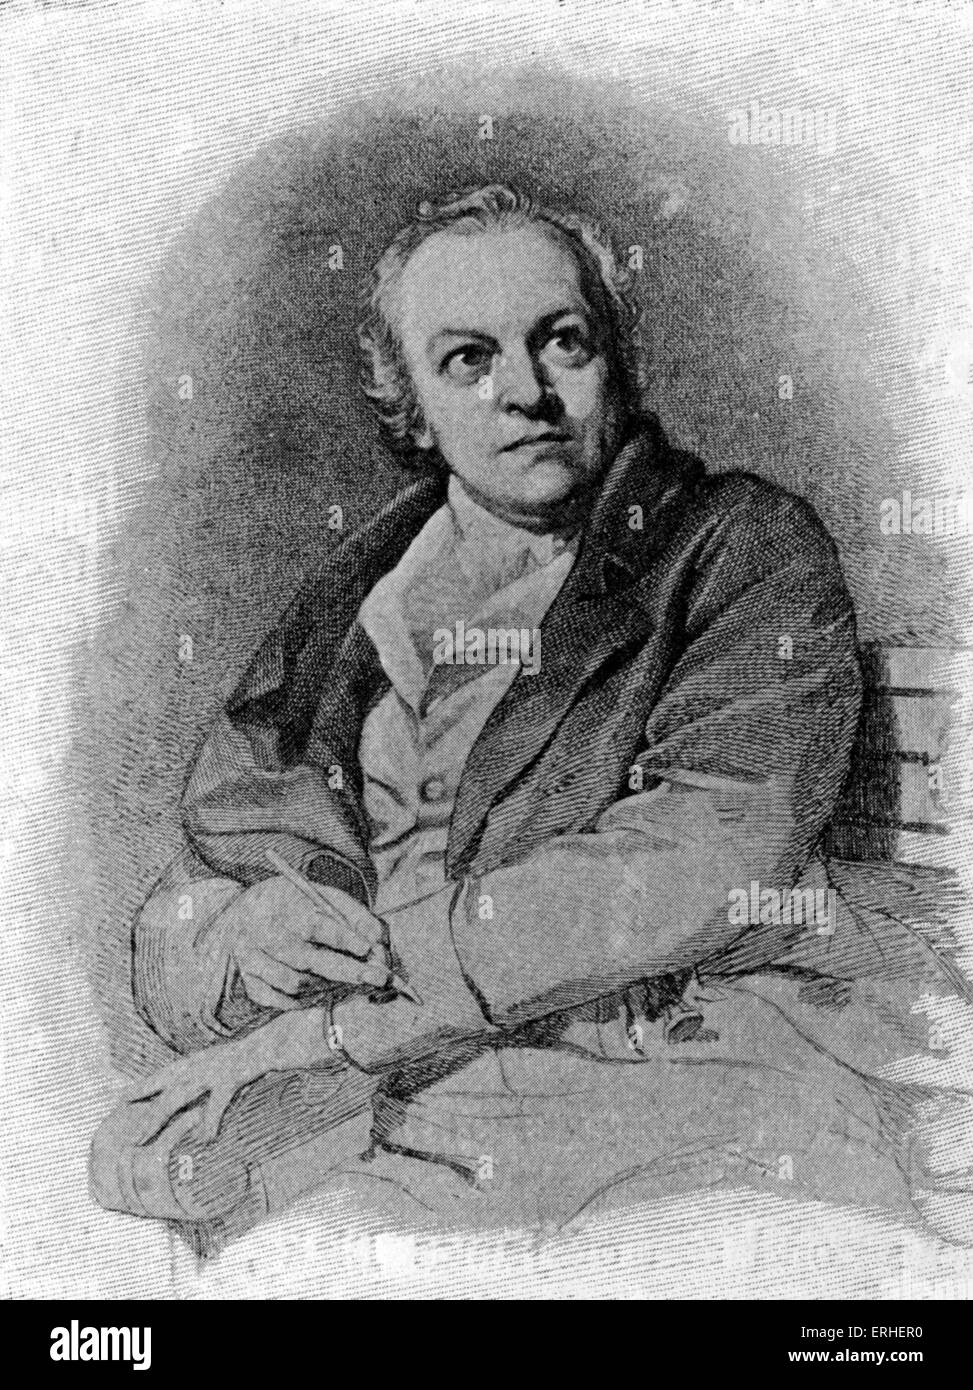 William Blake, poète britannique, peintre et graveur, après le portrait par T. Phillips. 28 novembre 1757 - 12 août 1827. Banque D'Images